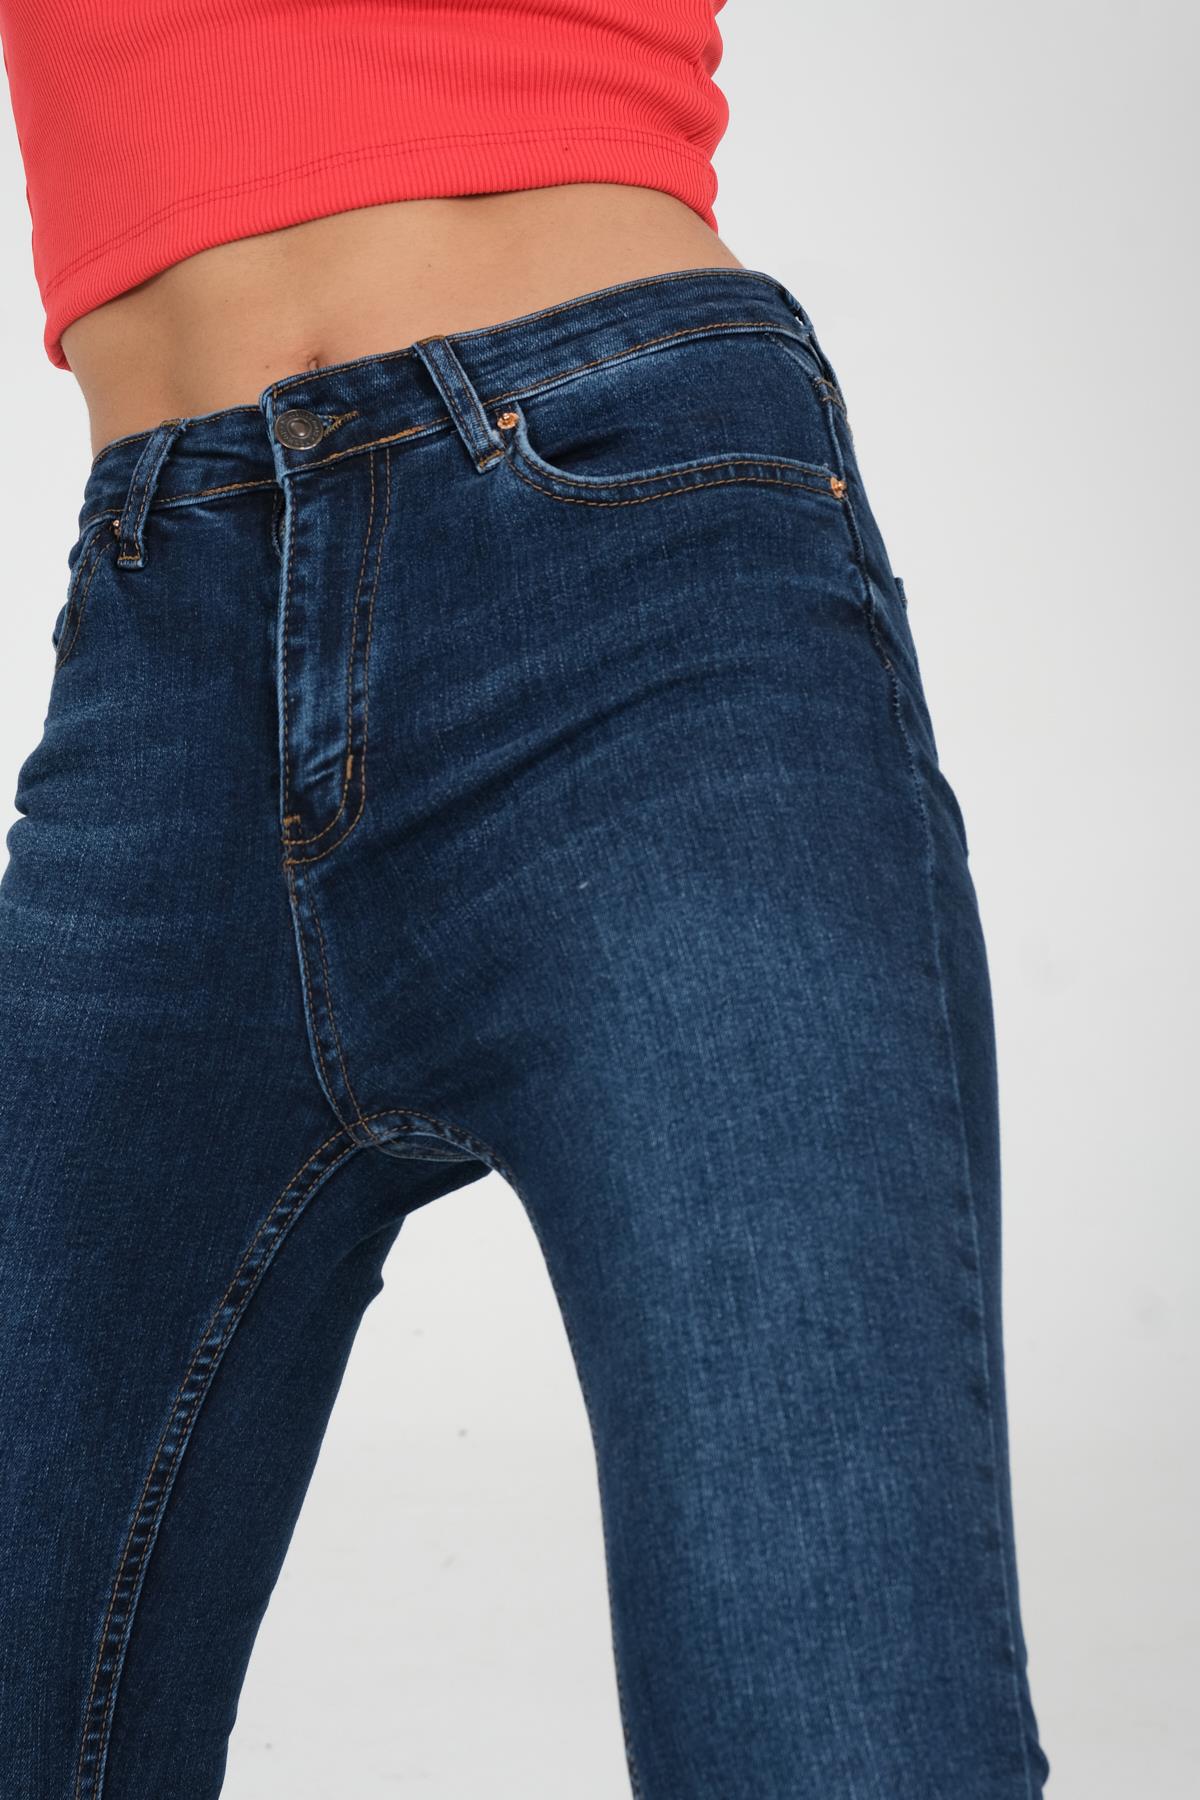 Koyu Mavi indigo Skinny Jeans Kadın Denim Pantolon